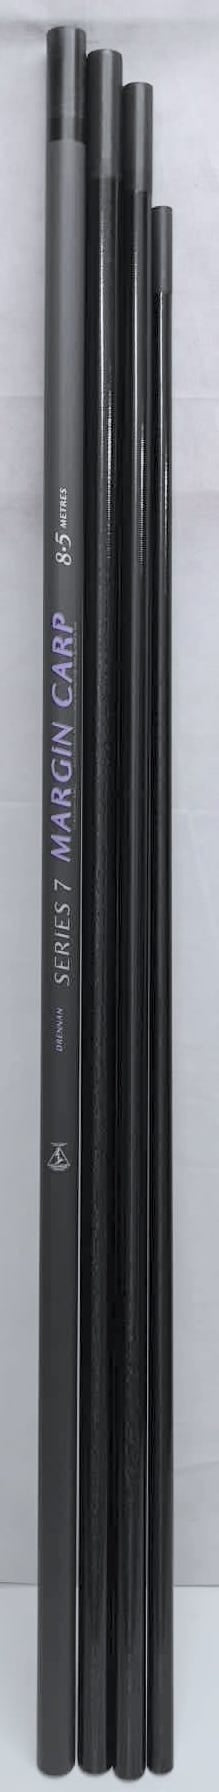 Drennan Series 7 Margin Carp 8.5m Pole